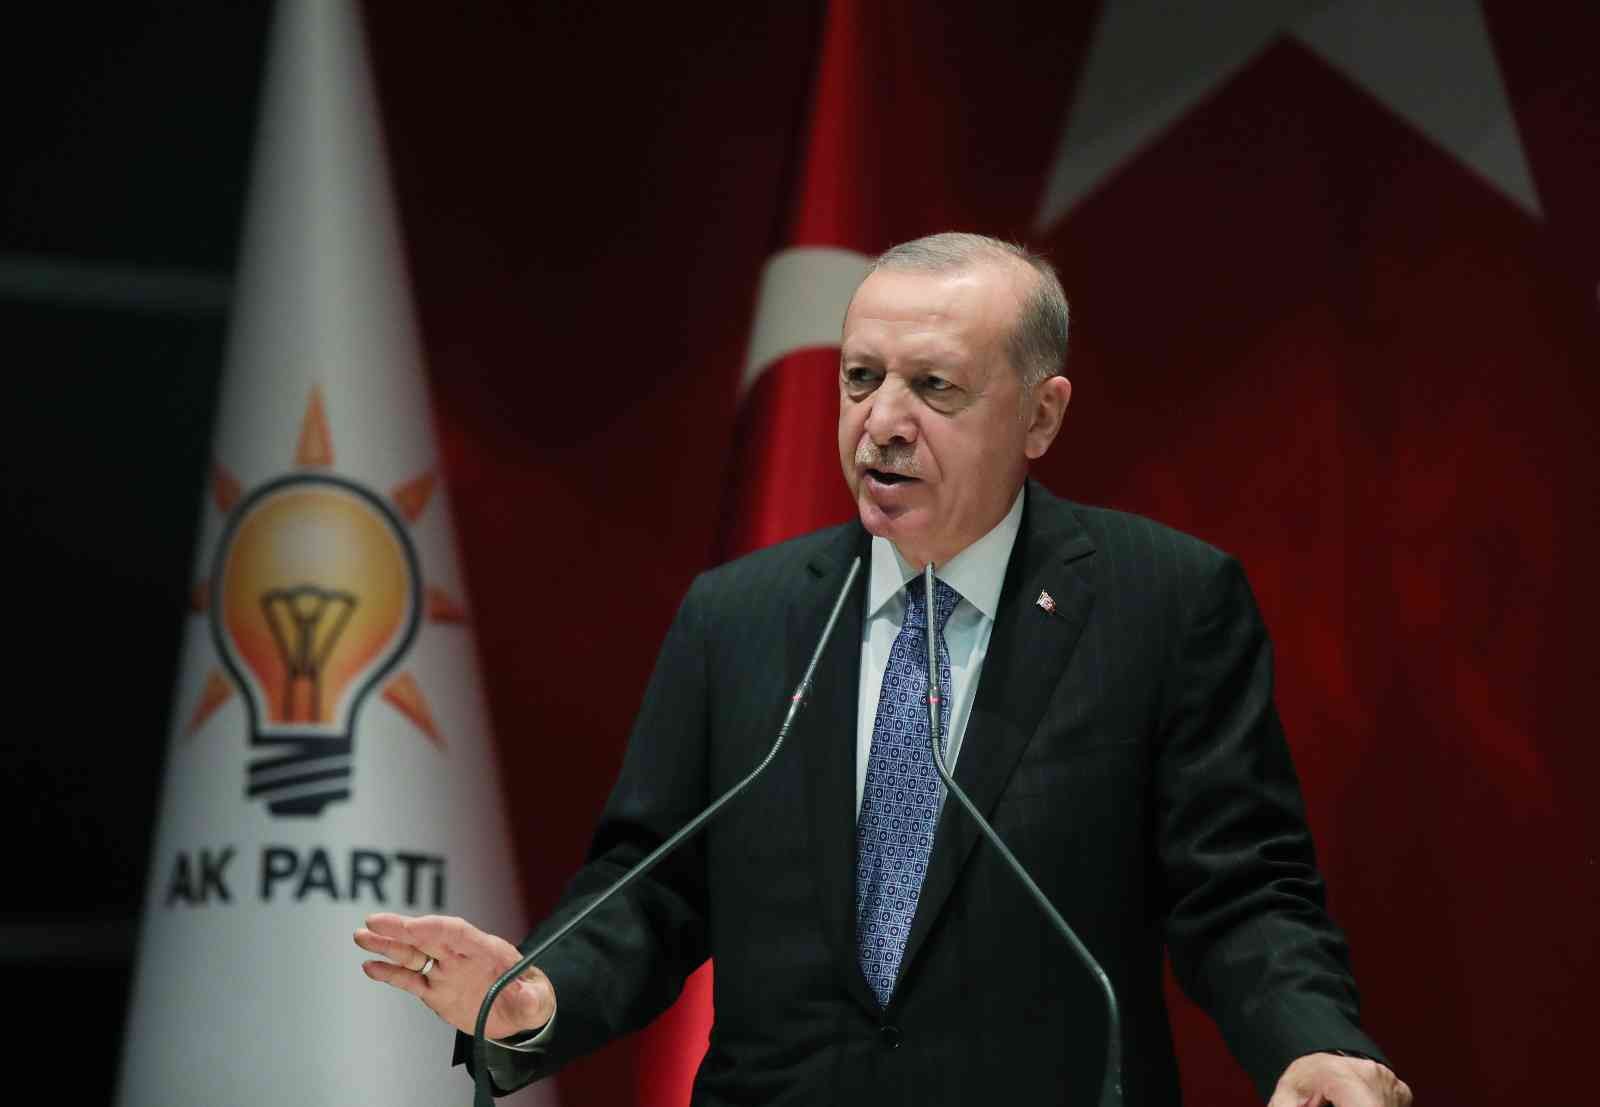 Cumhurbaşkanı Erdoğan’dan erken seçim açıklaması: “Yahu olmayacak erken seçim. Haziran 2023”